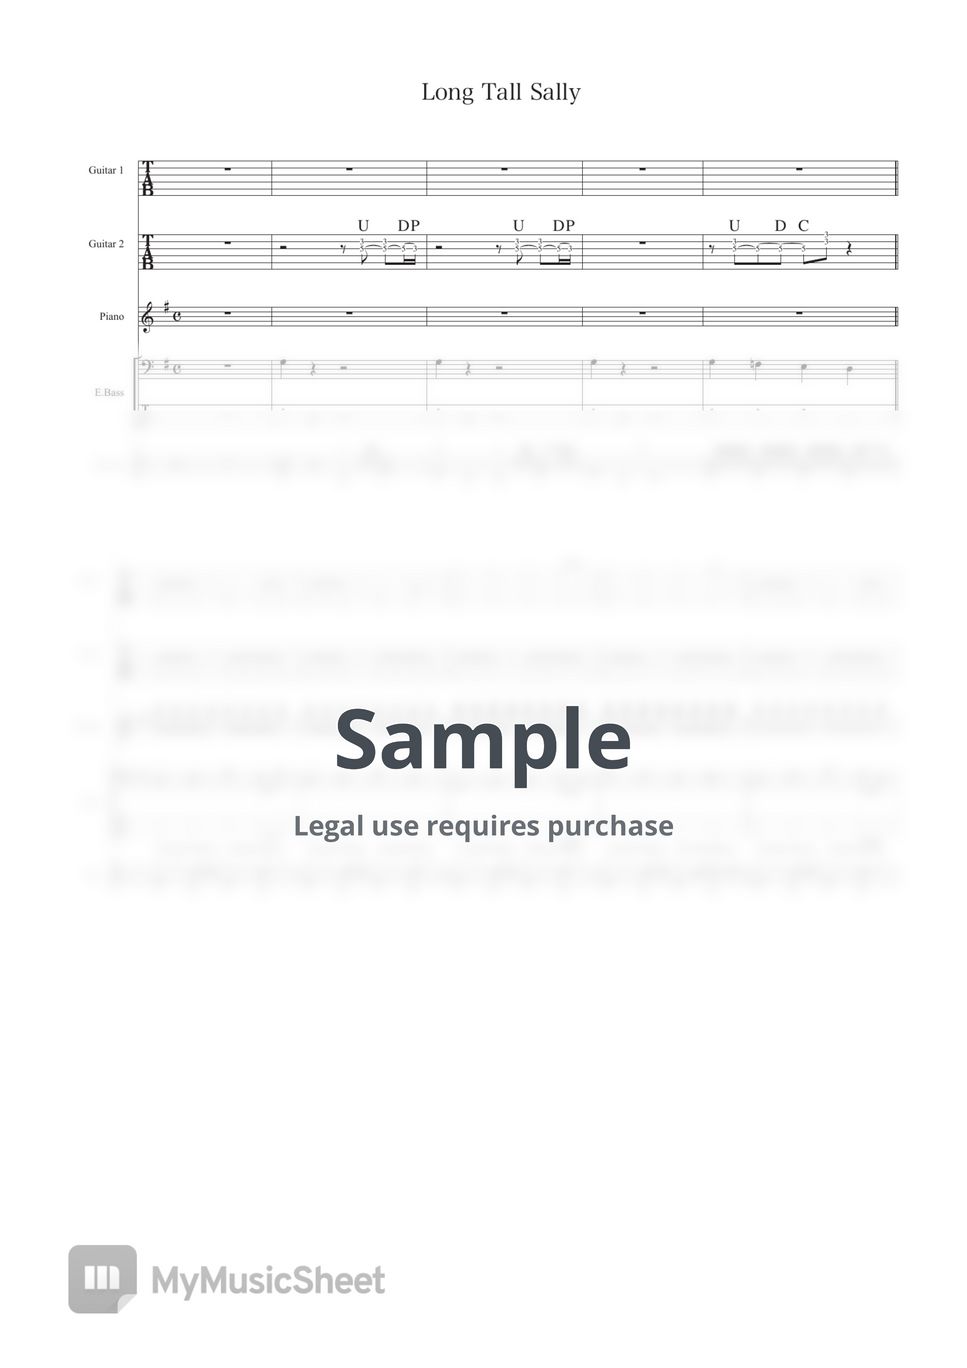 The Beatles - Long Tall Sally (Band Score) by Ryohei Kanayama